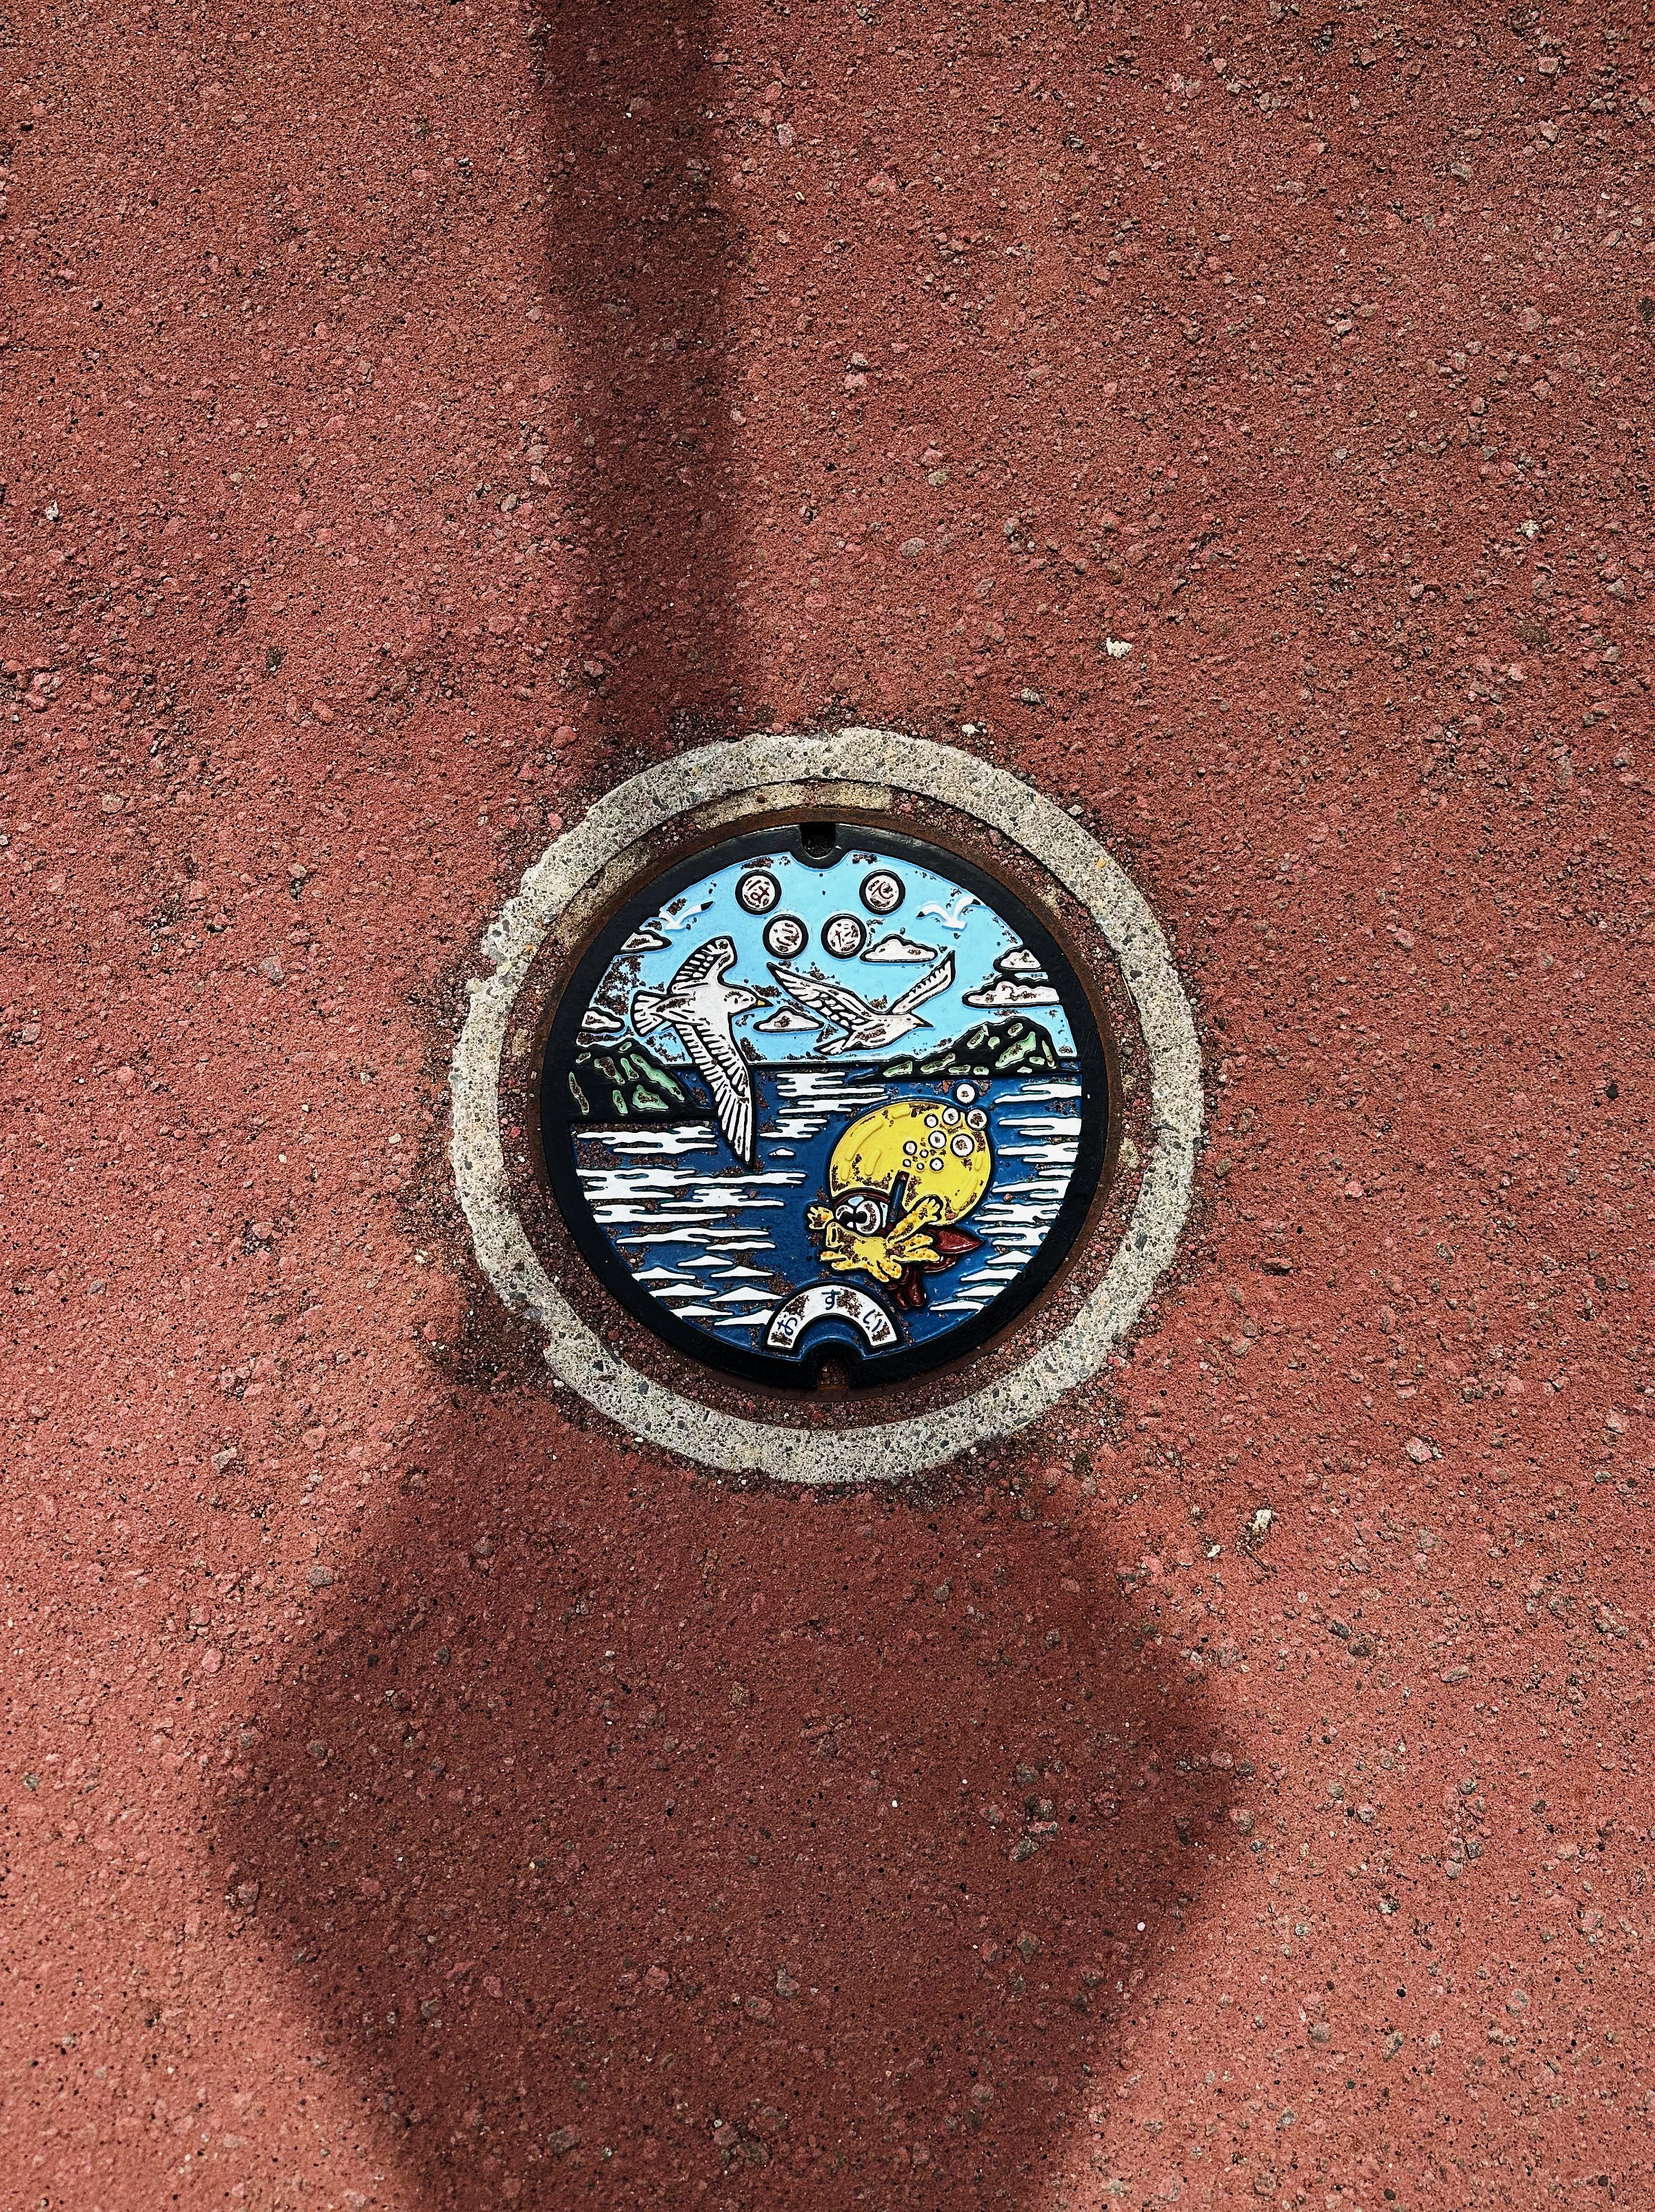 Manhole in Hakodate